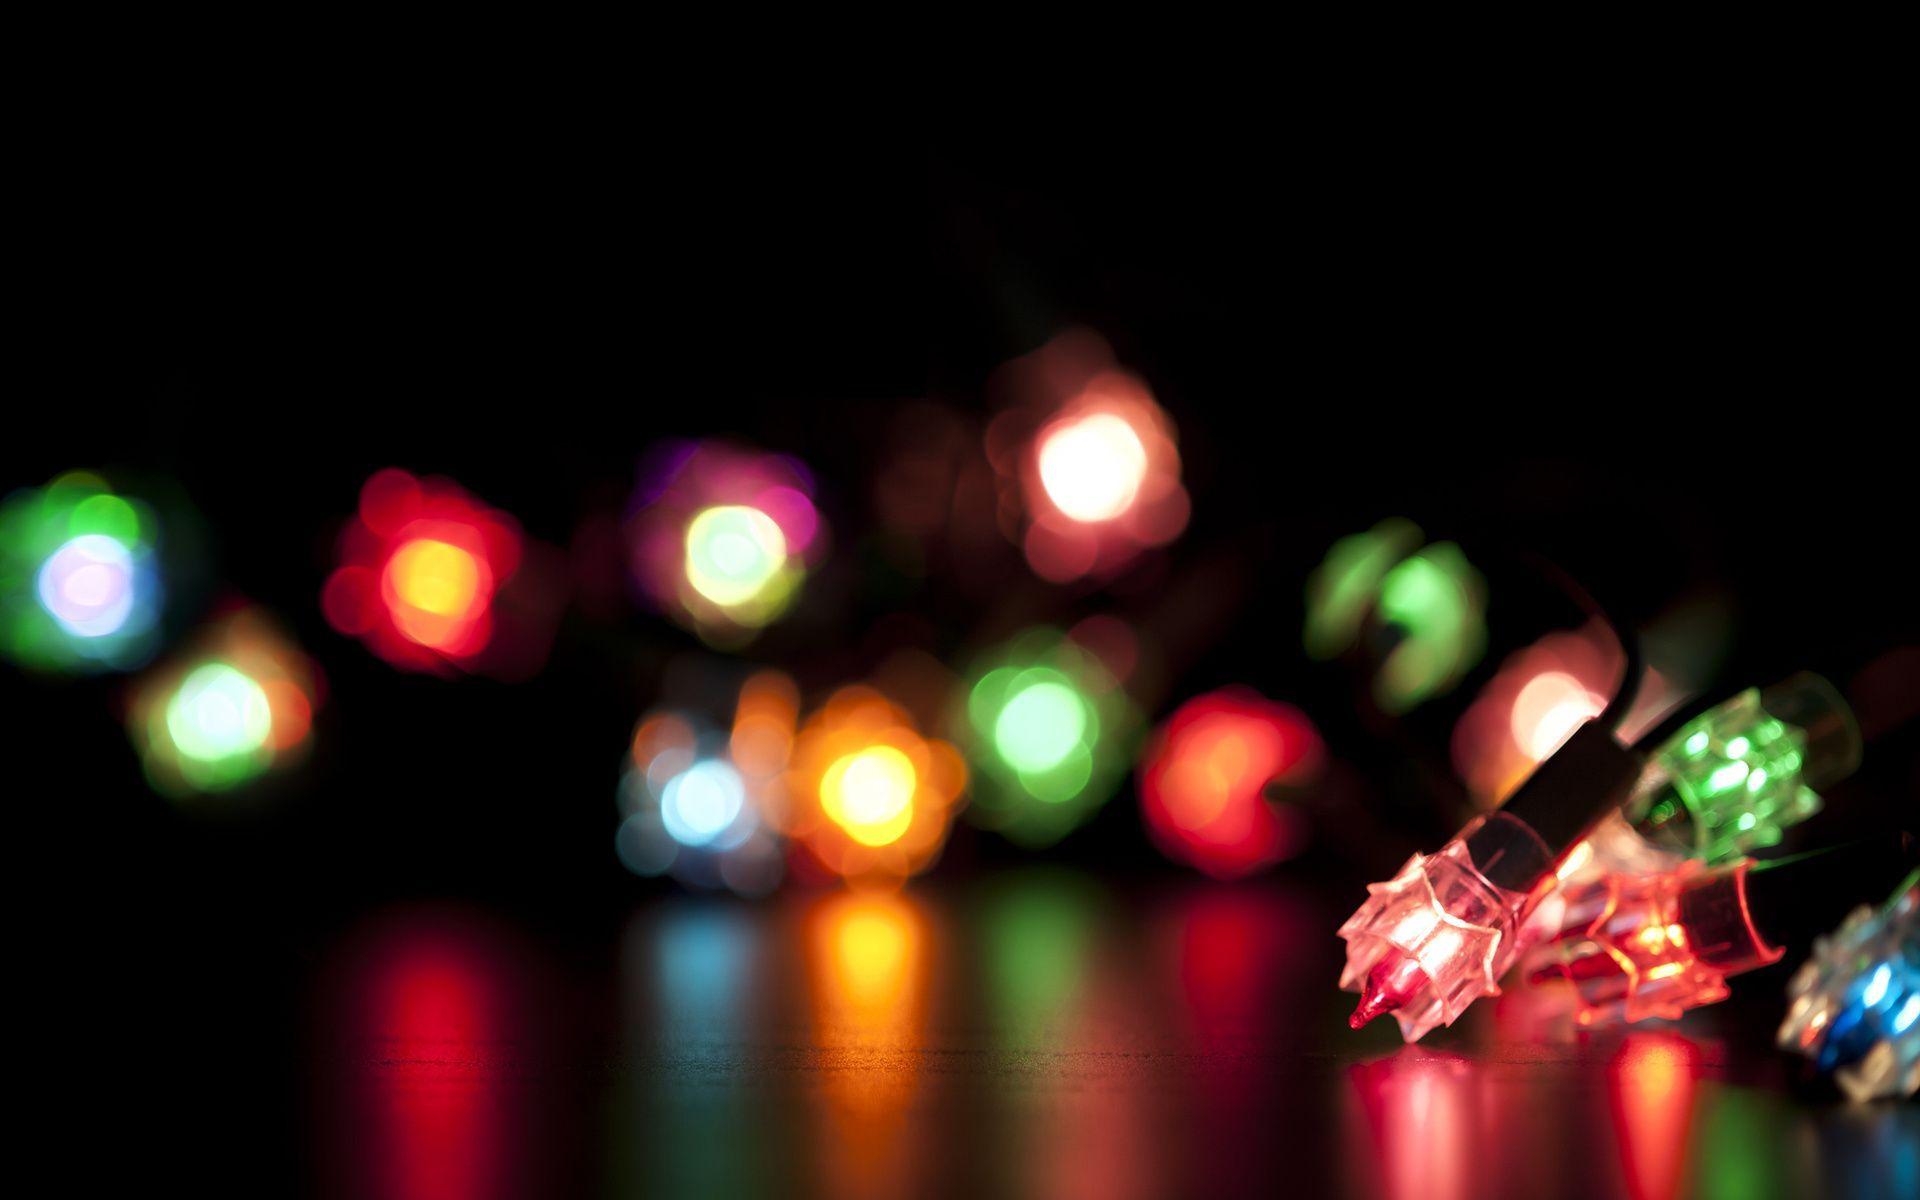 Bokeh Lights Bulbs. Christmas lights wallpaper, Christmas light photography, Christmas lights background